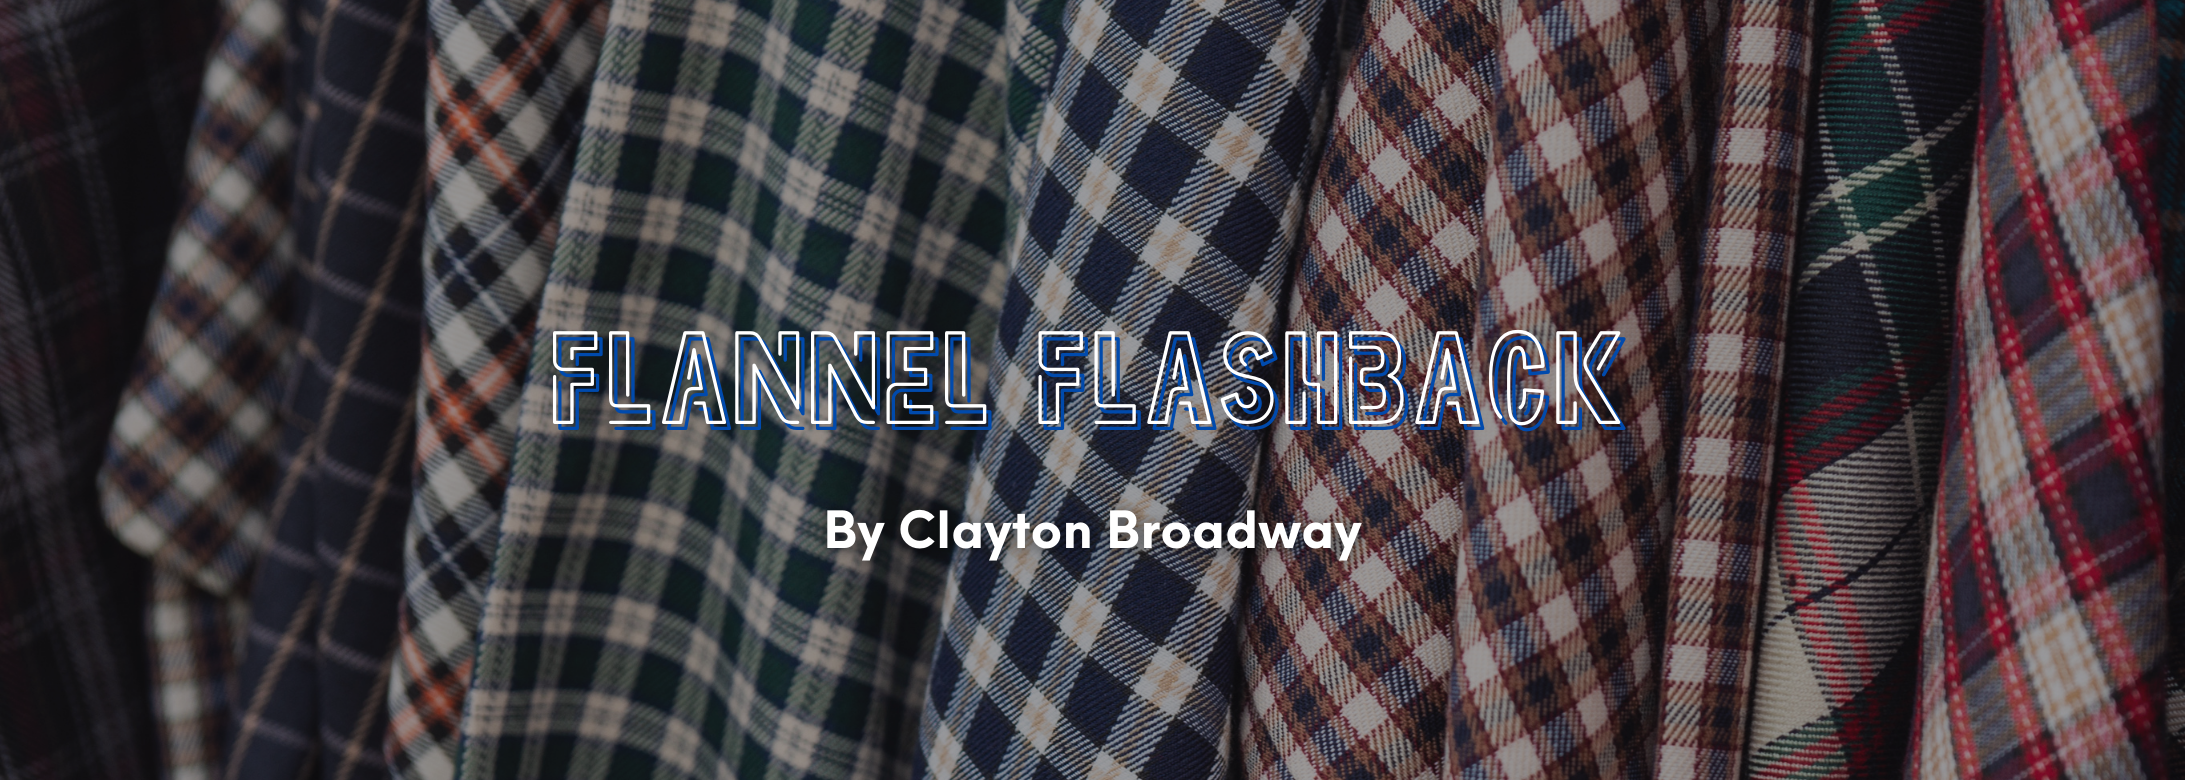 Flannel Flashback blog cover